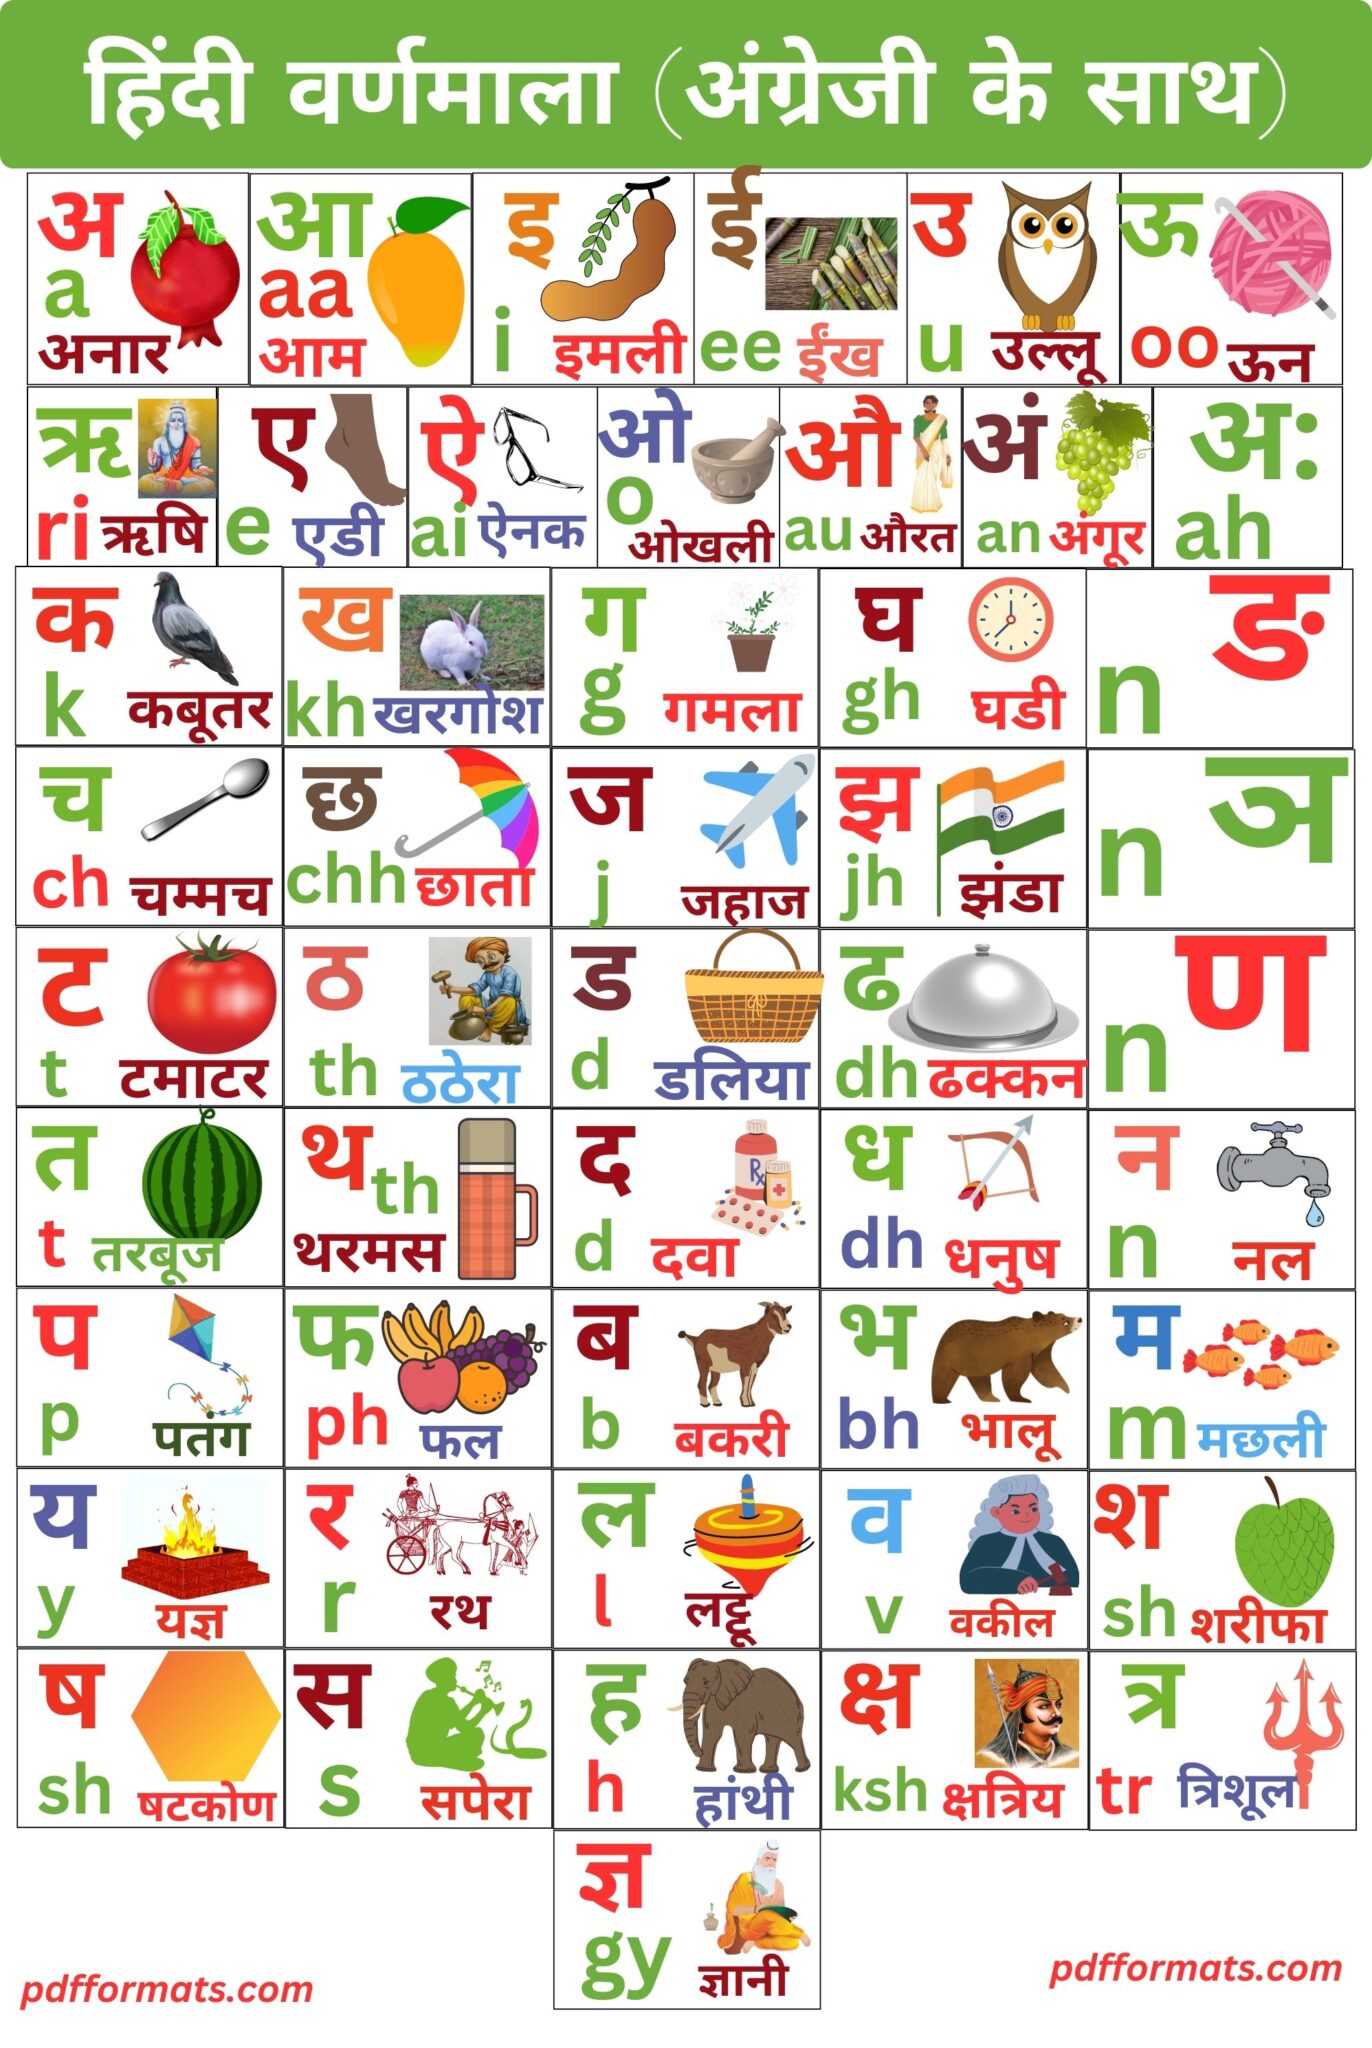 Hindi Varnamala Hindi Varnamala Chart Words